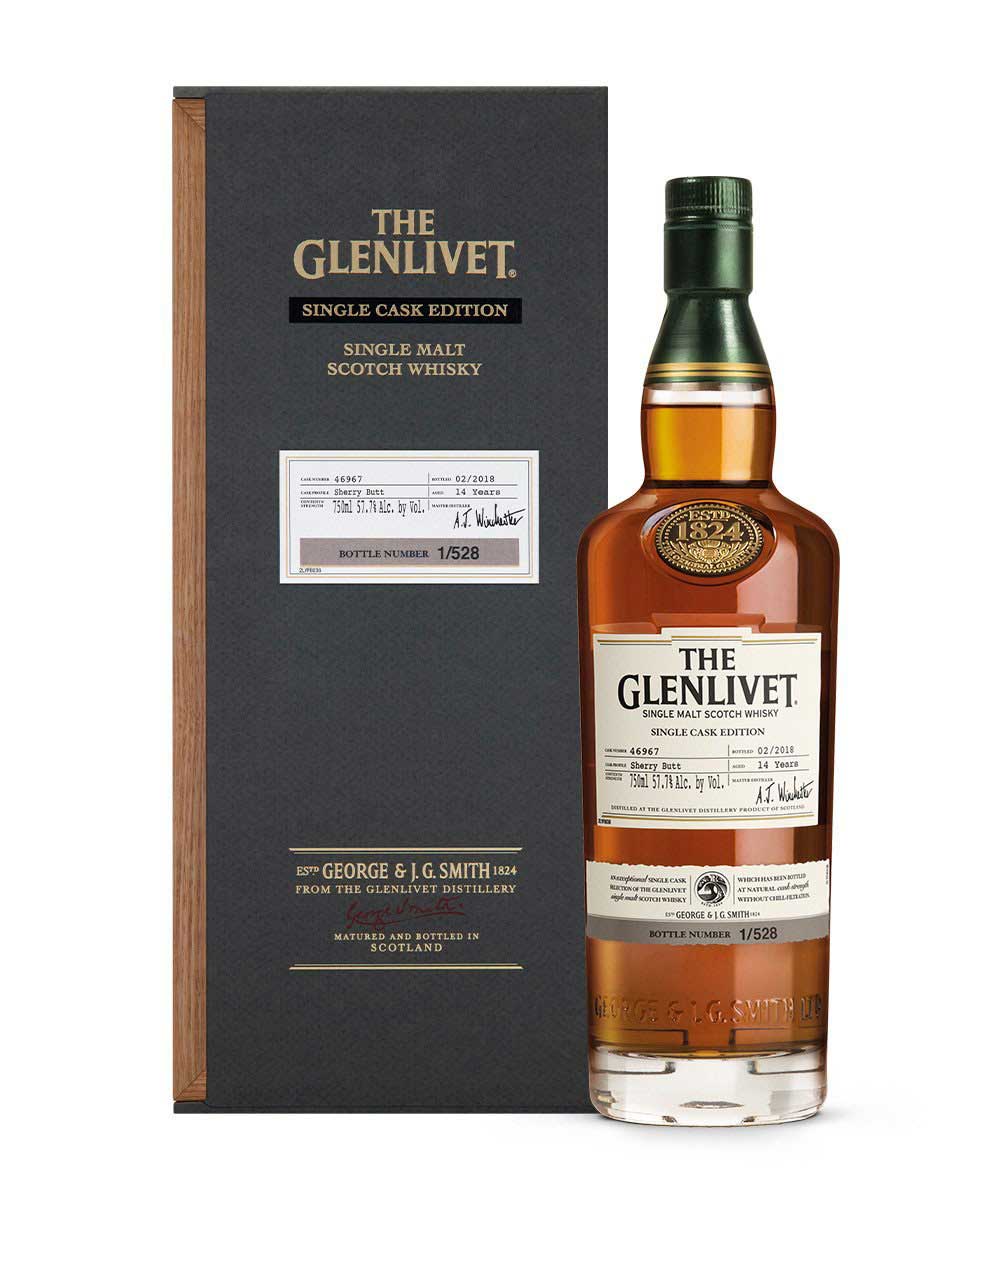 The Glenlivet Single Cask Edition 2nd Fill Sherry scotch whisky